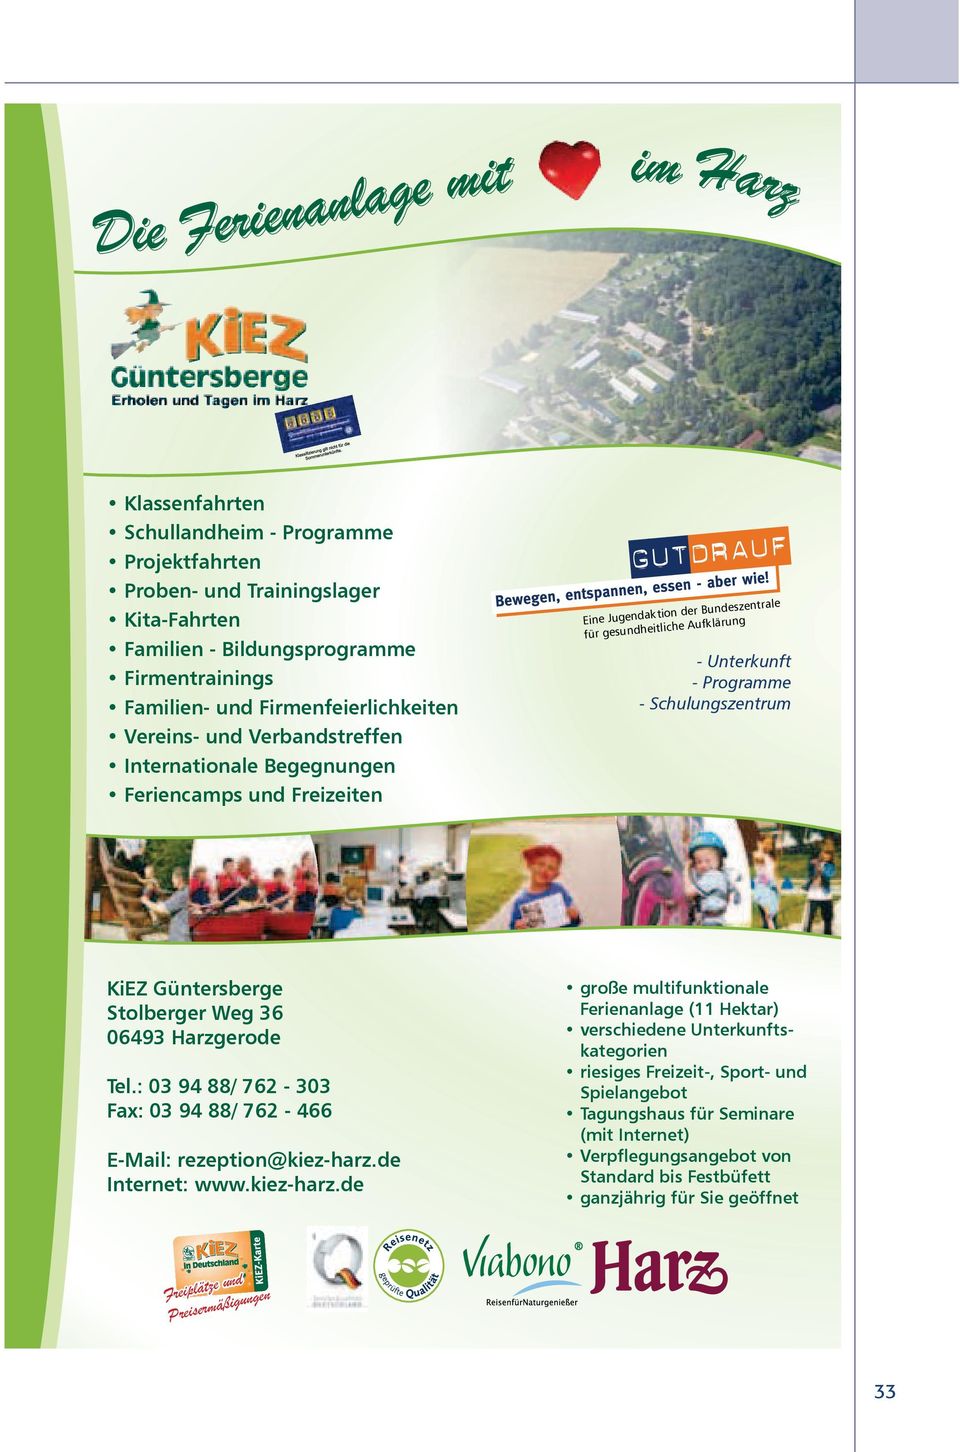 Programme - Schulungszentrum 06493 Harzgerode